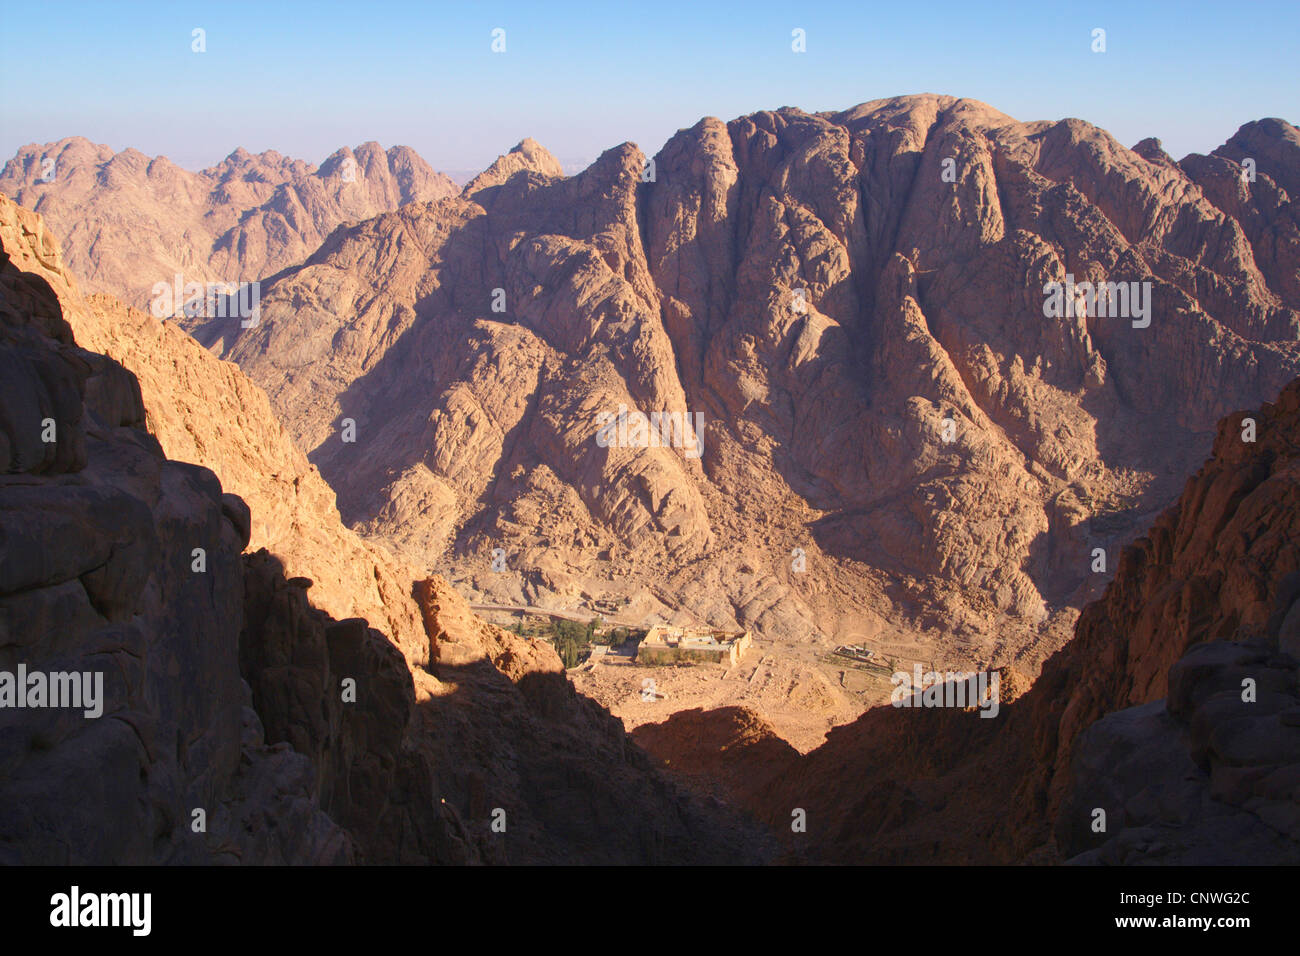 Katharinenkloster am Fuße des Mount Sinai, Ägypten, Sinai Stockfoto